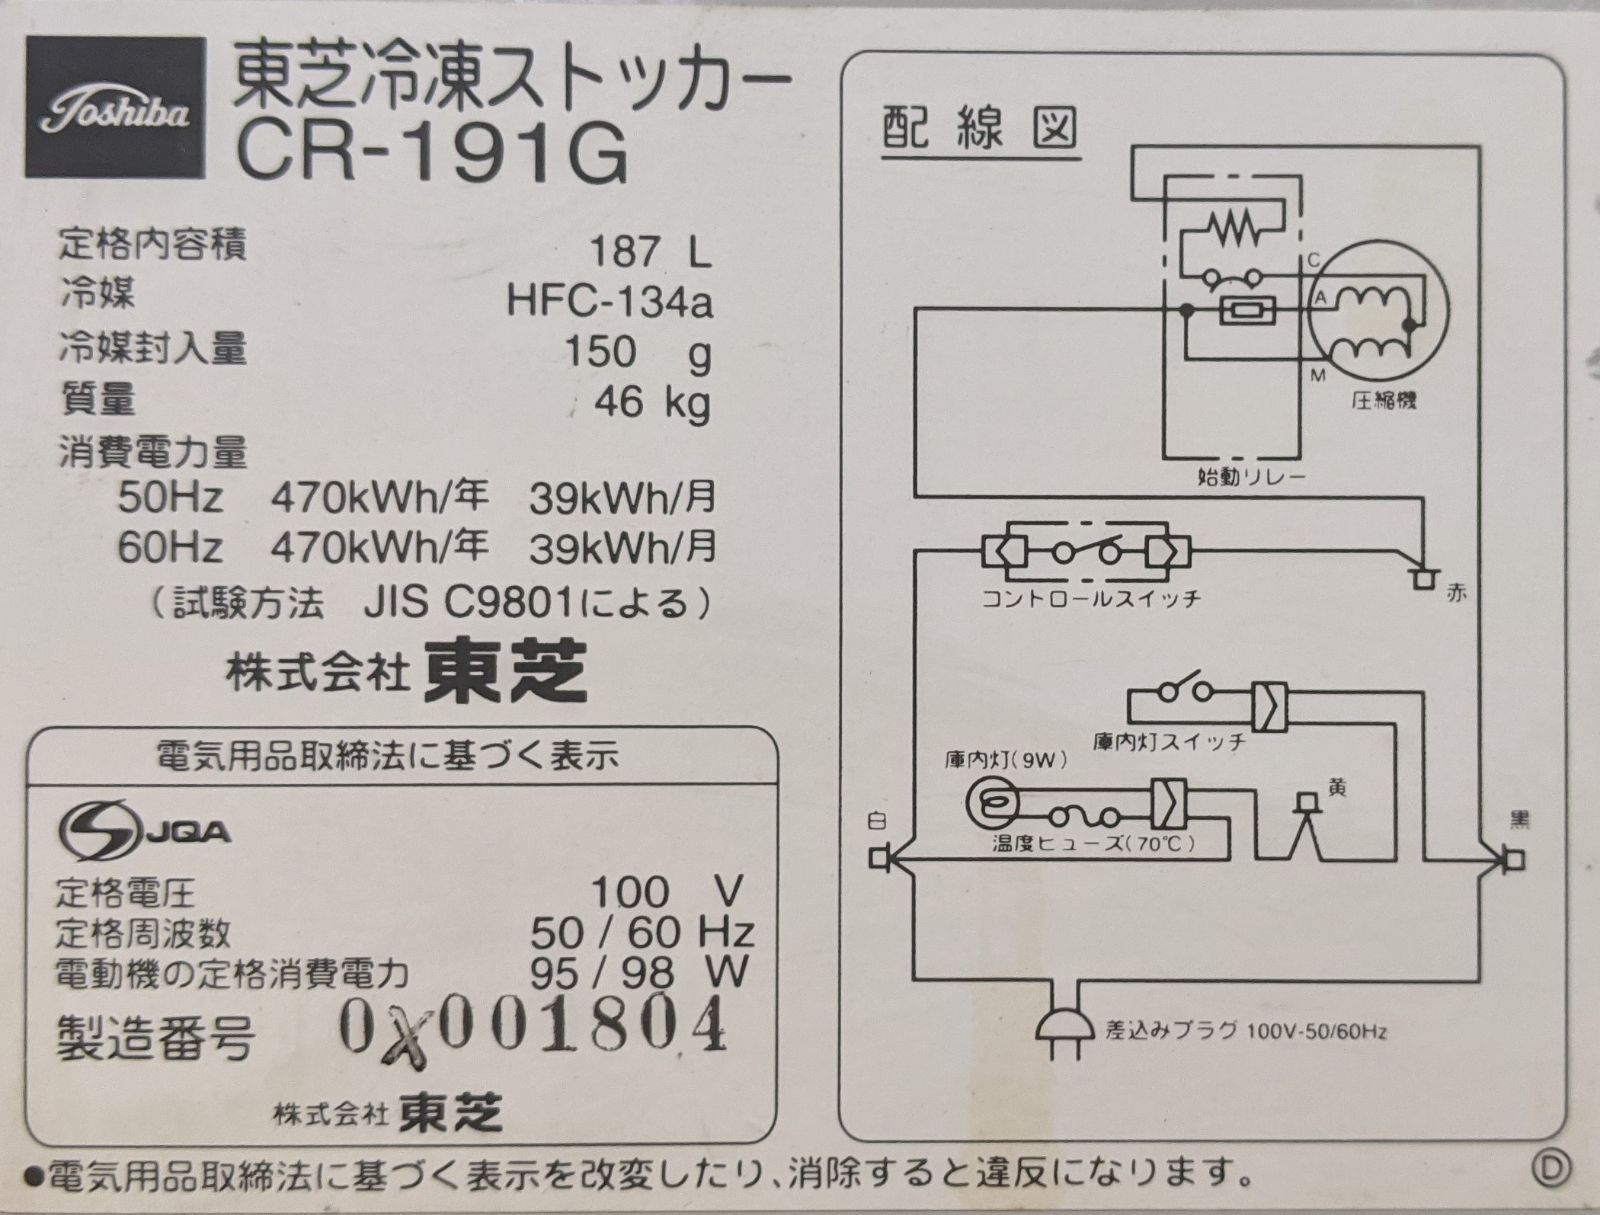 冷凍ストッカー(TOSHIBA/CR-191G/2001年製) - メルカリ